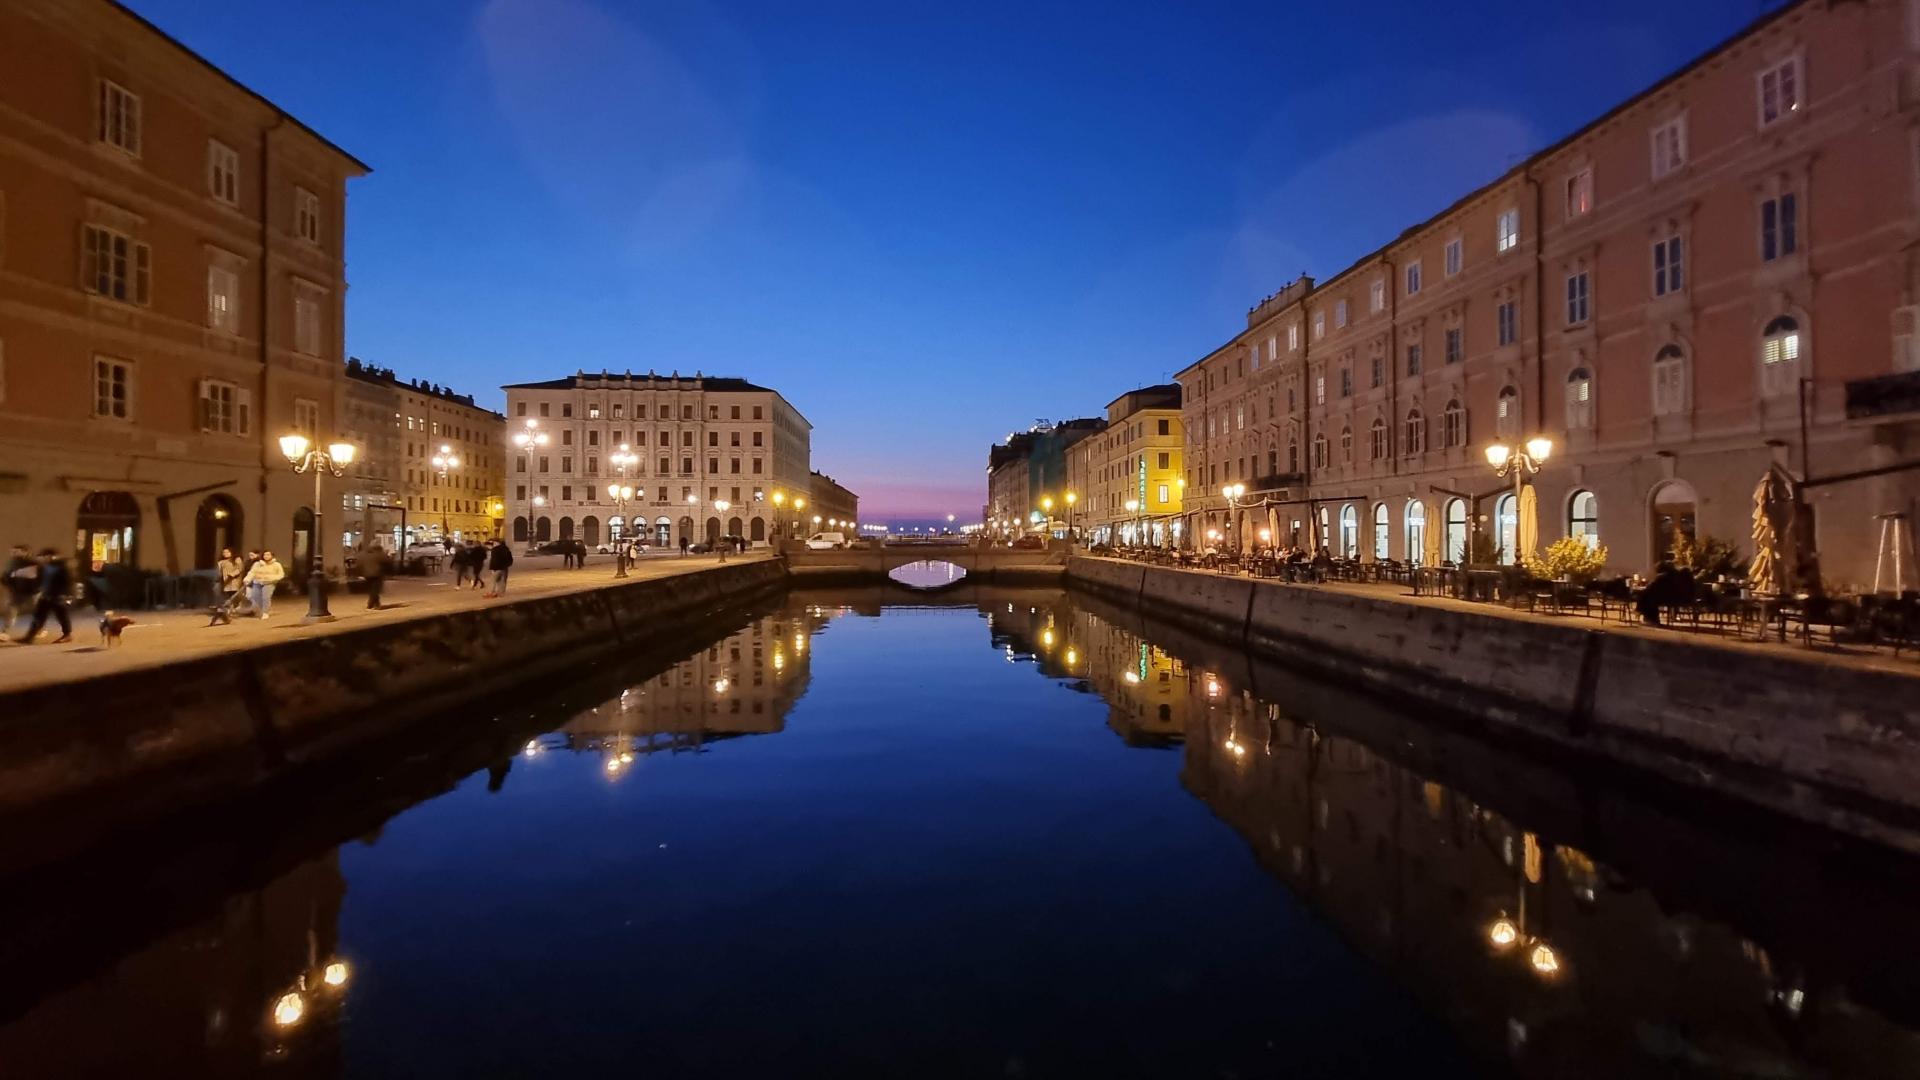 Trieste centro città: "il salotto buono" Image